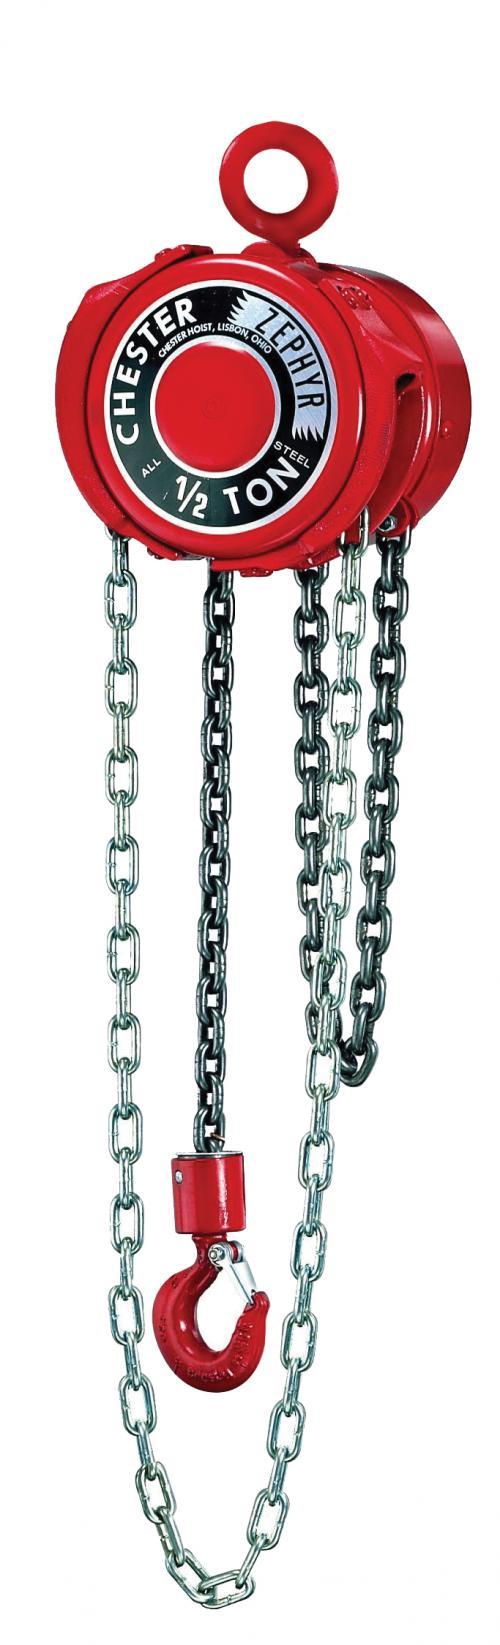 3 Ton Chester Zephyr | Manual Chain Hoist | Uescocranes.com